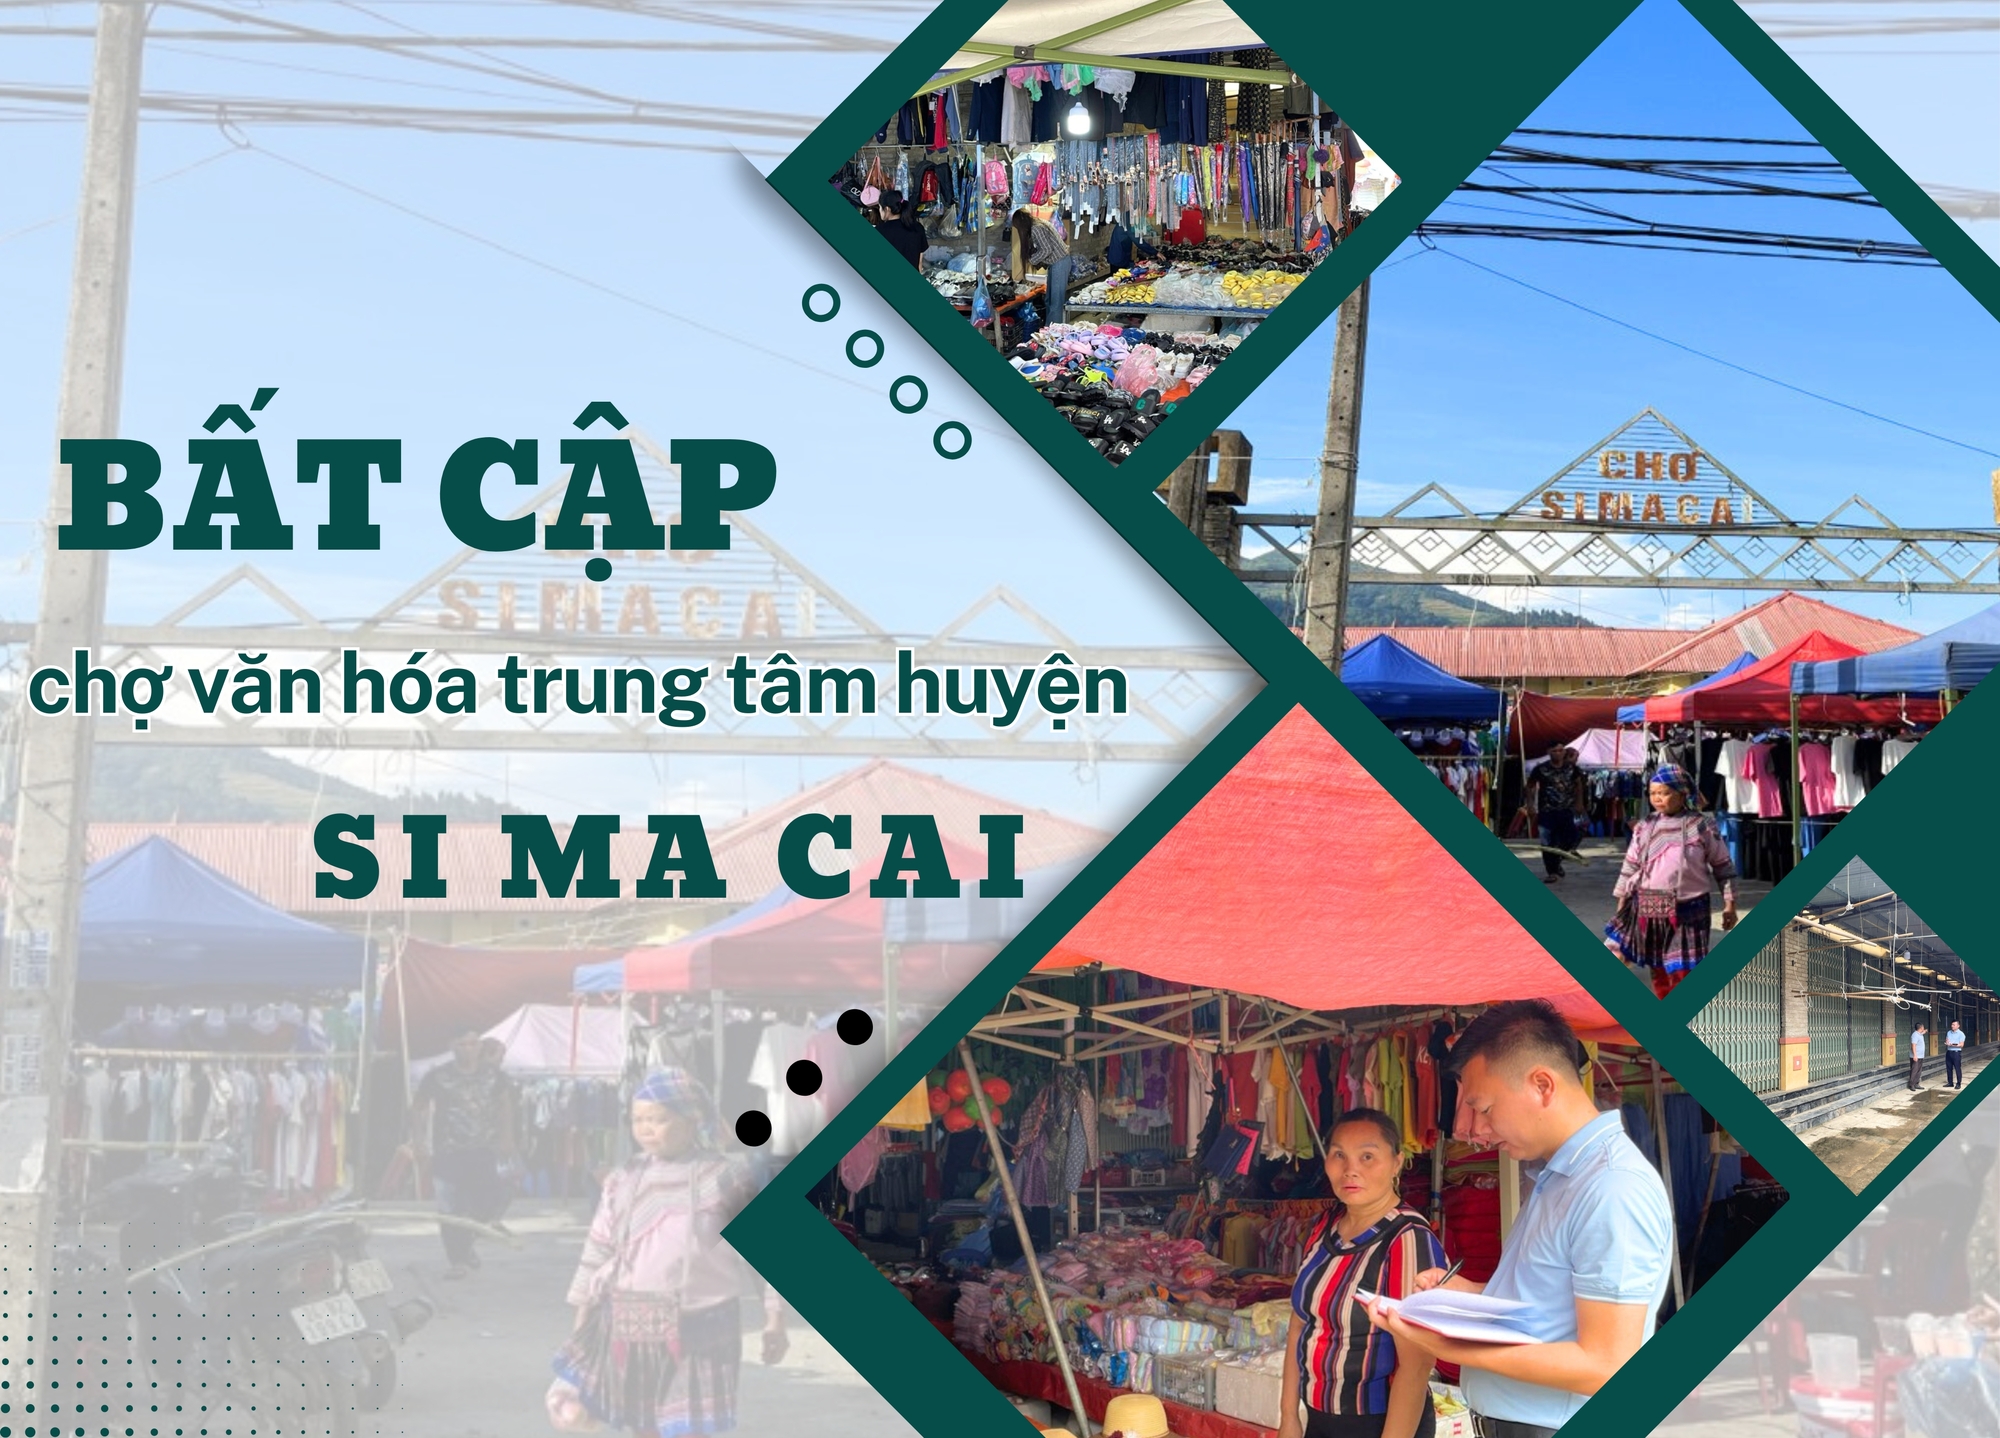 Bất cập chợ văn hóa trung tâm huyện Si Ma Cai